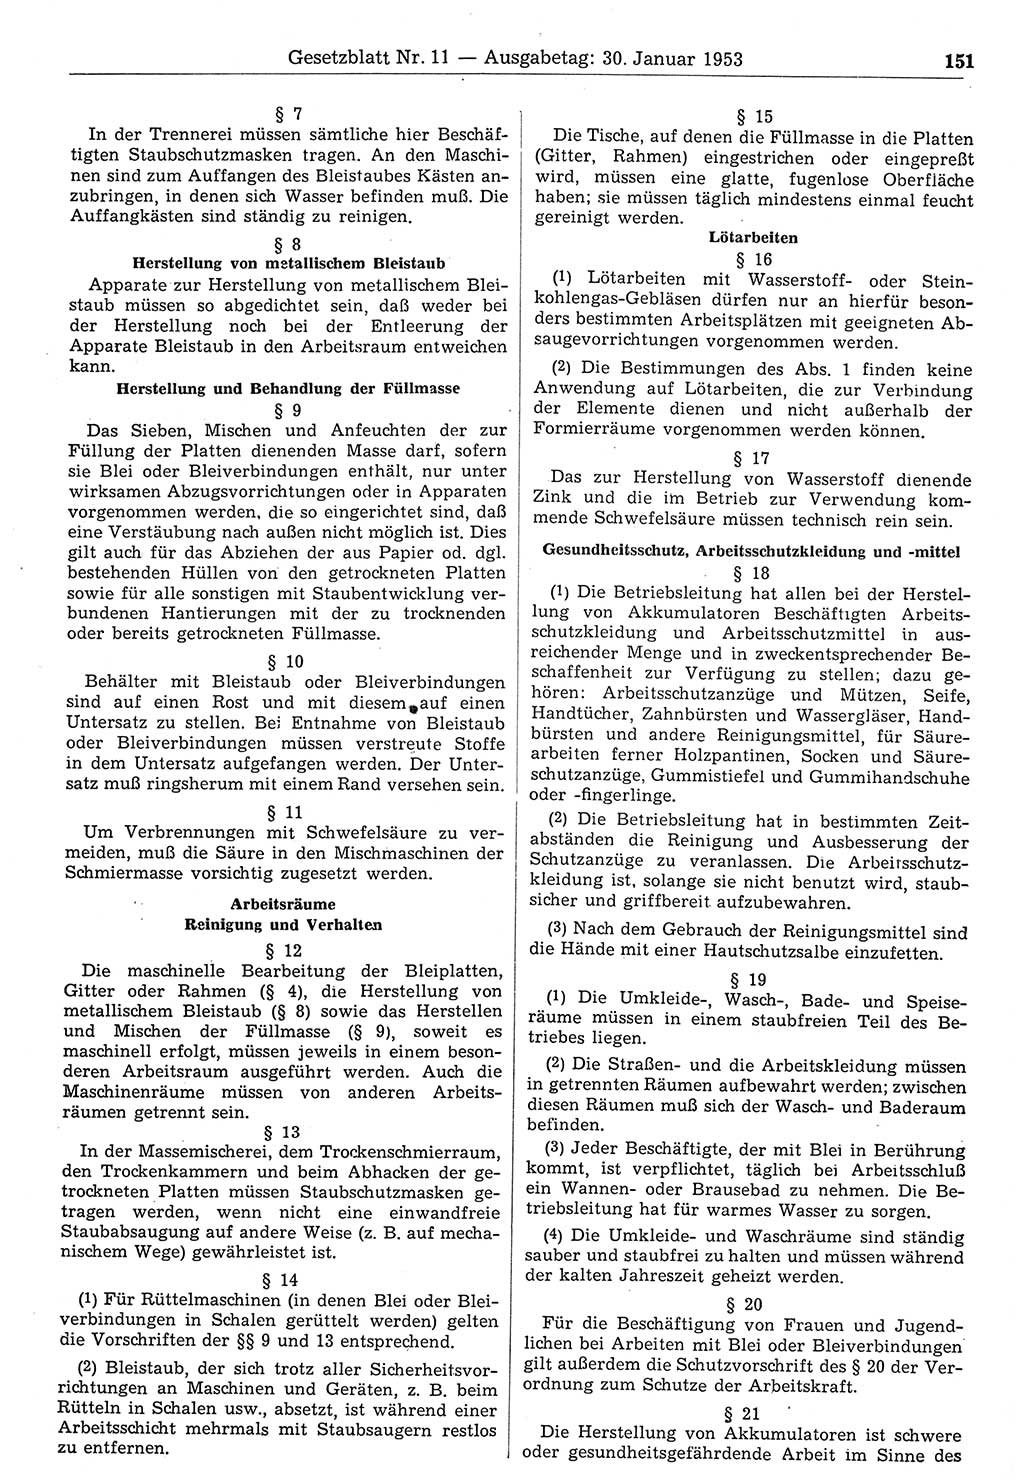 Gesetzblatt (GBl.) der Deutschen Demokratischen Republik (DDR) 1953, Seite 151 (GBl. DDR 1953, S. 151)